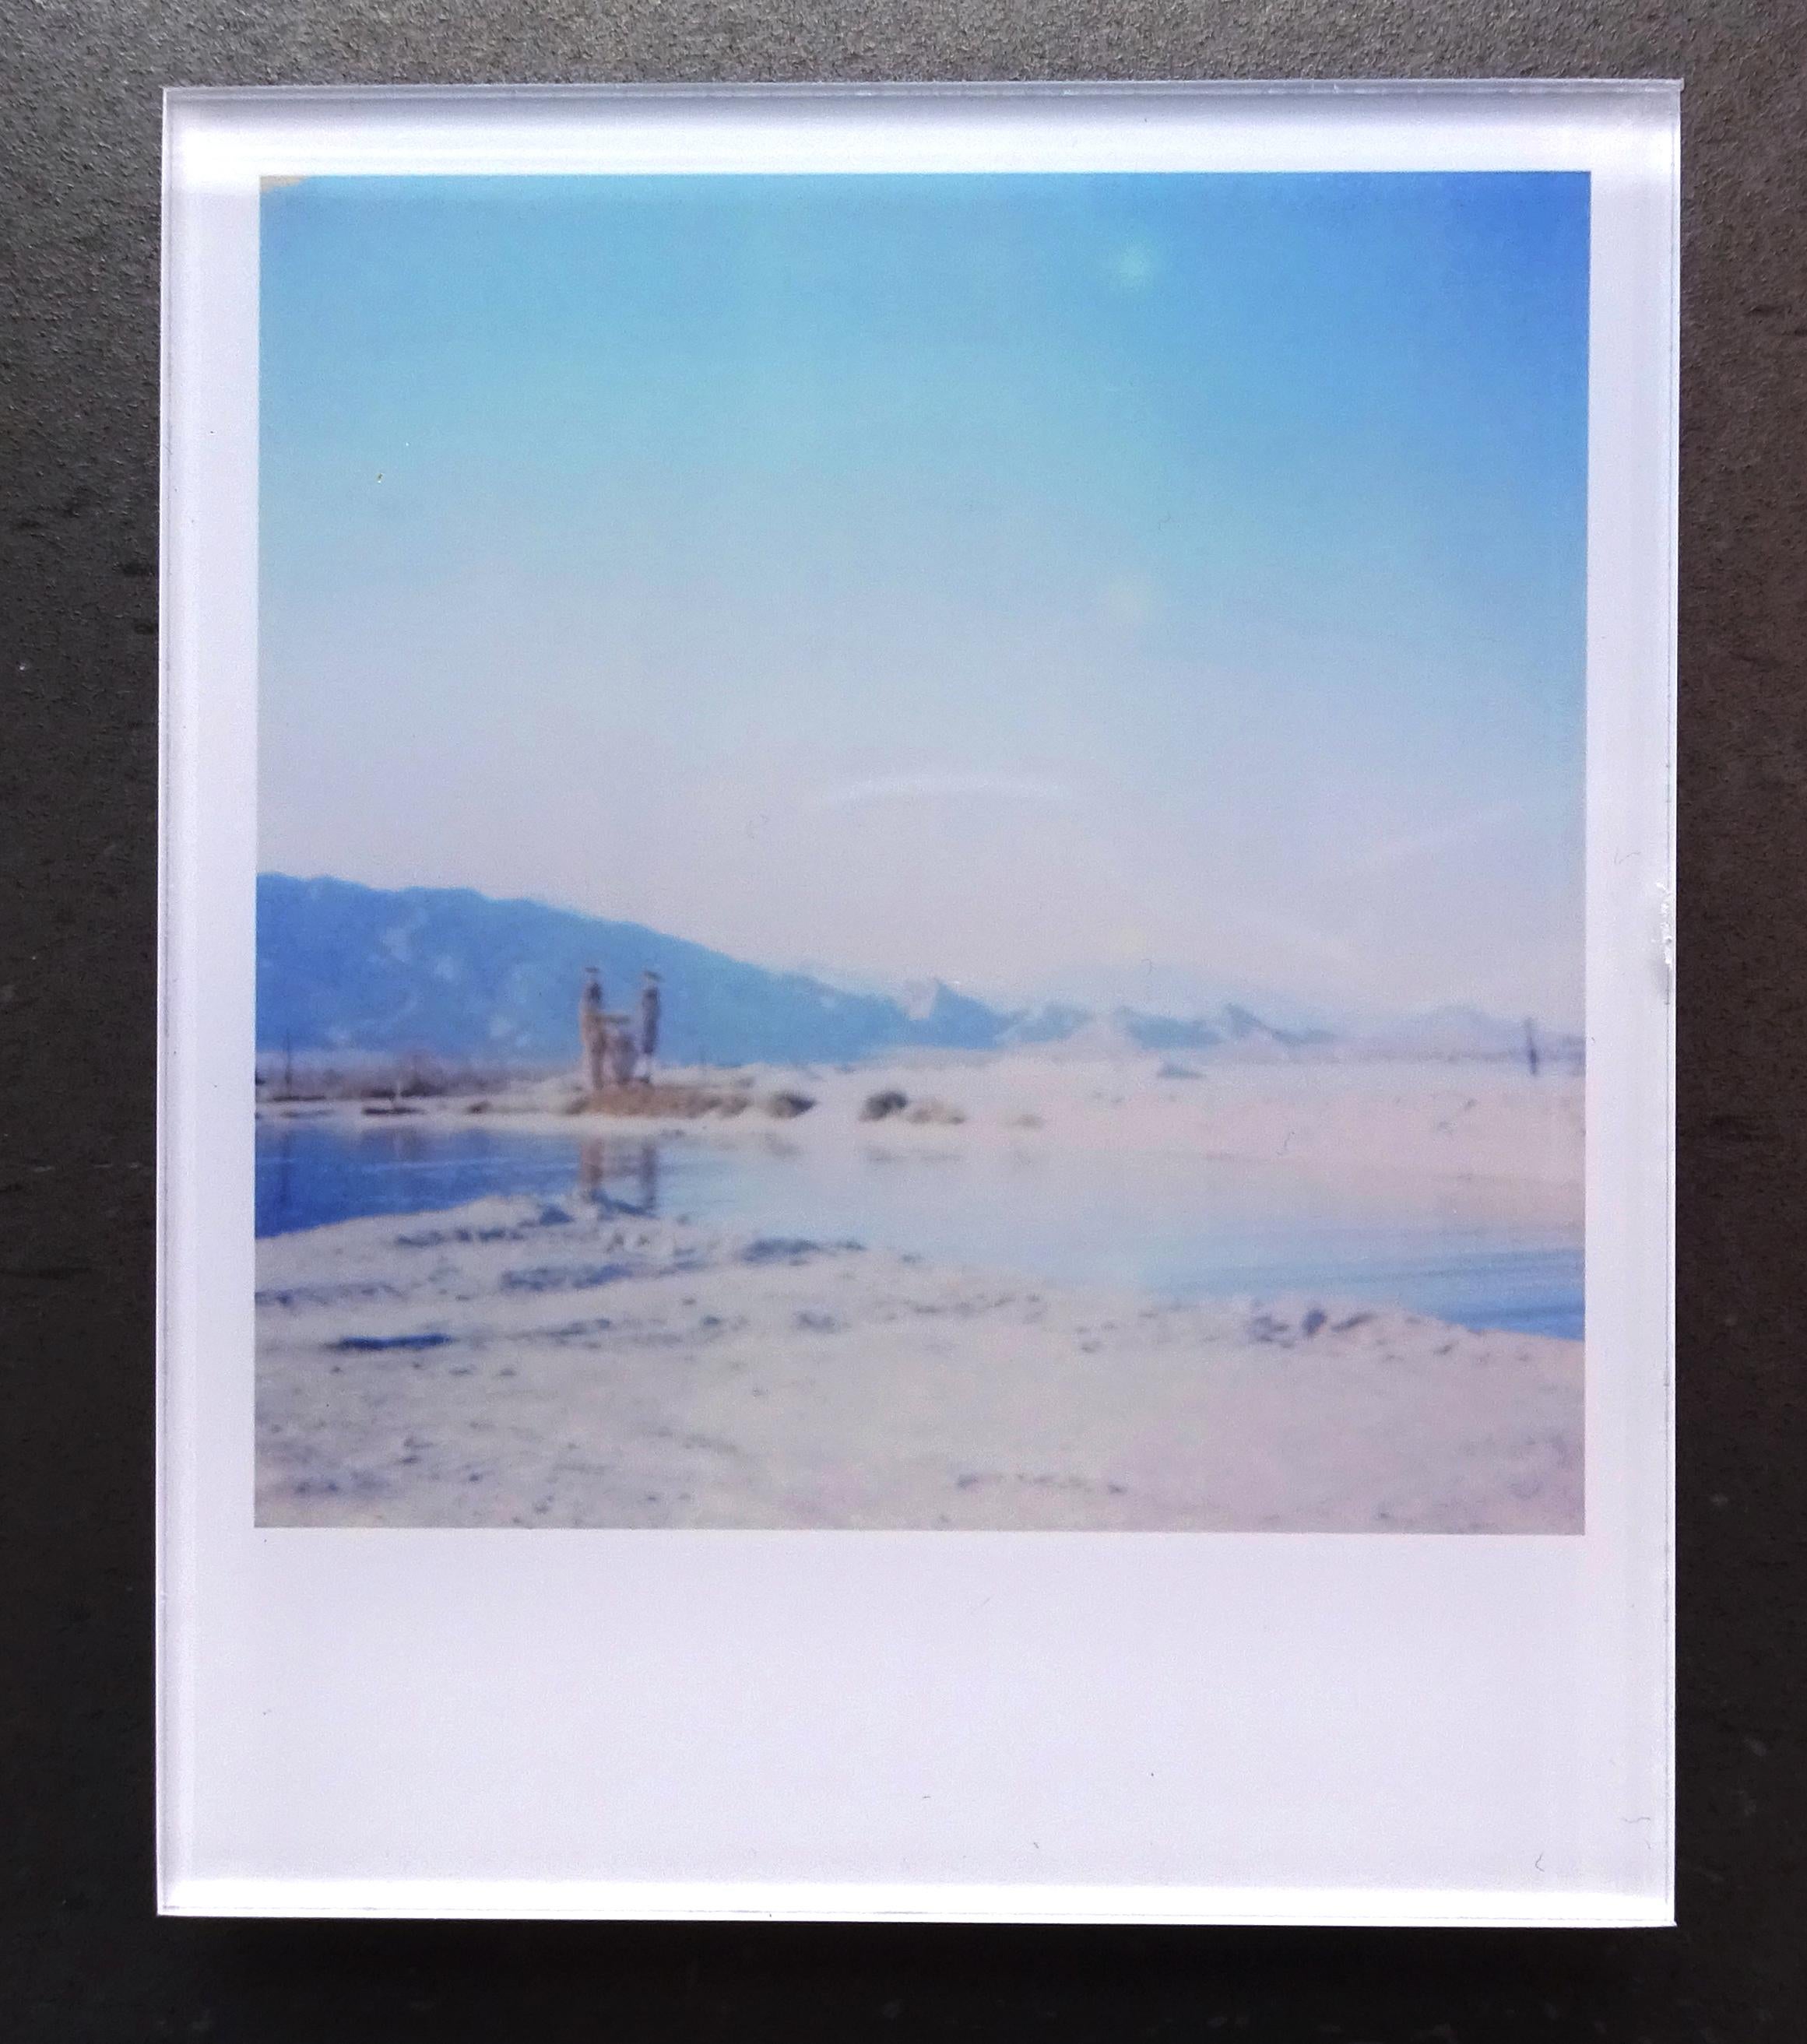 Stefanie Schneider Minis - Desert Shores - based on the Polaroid